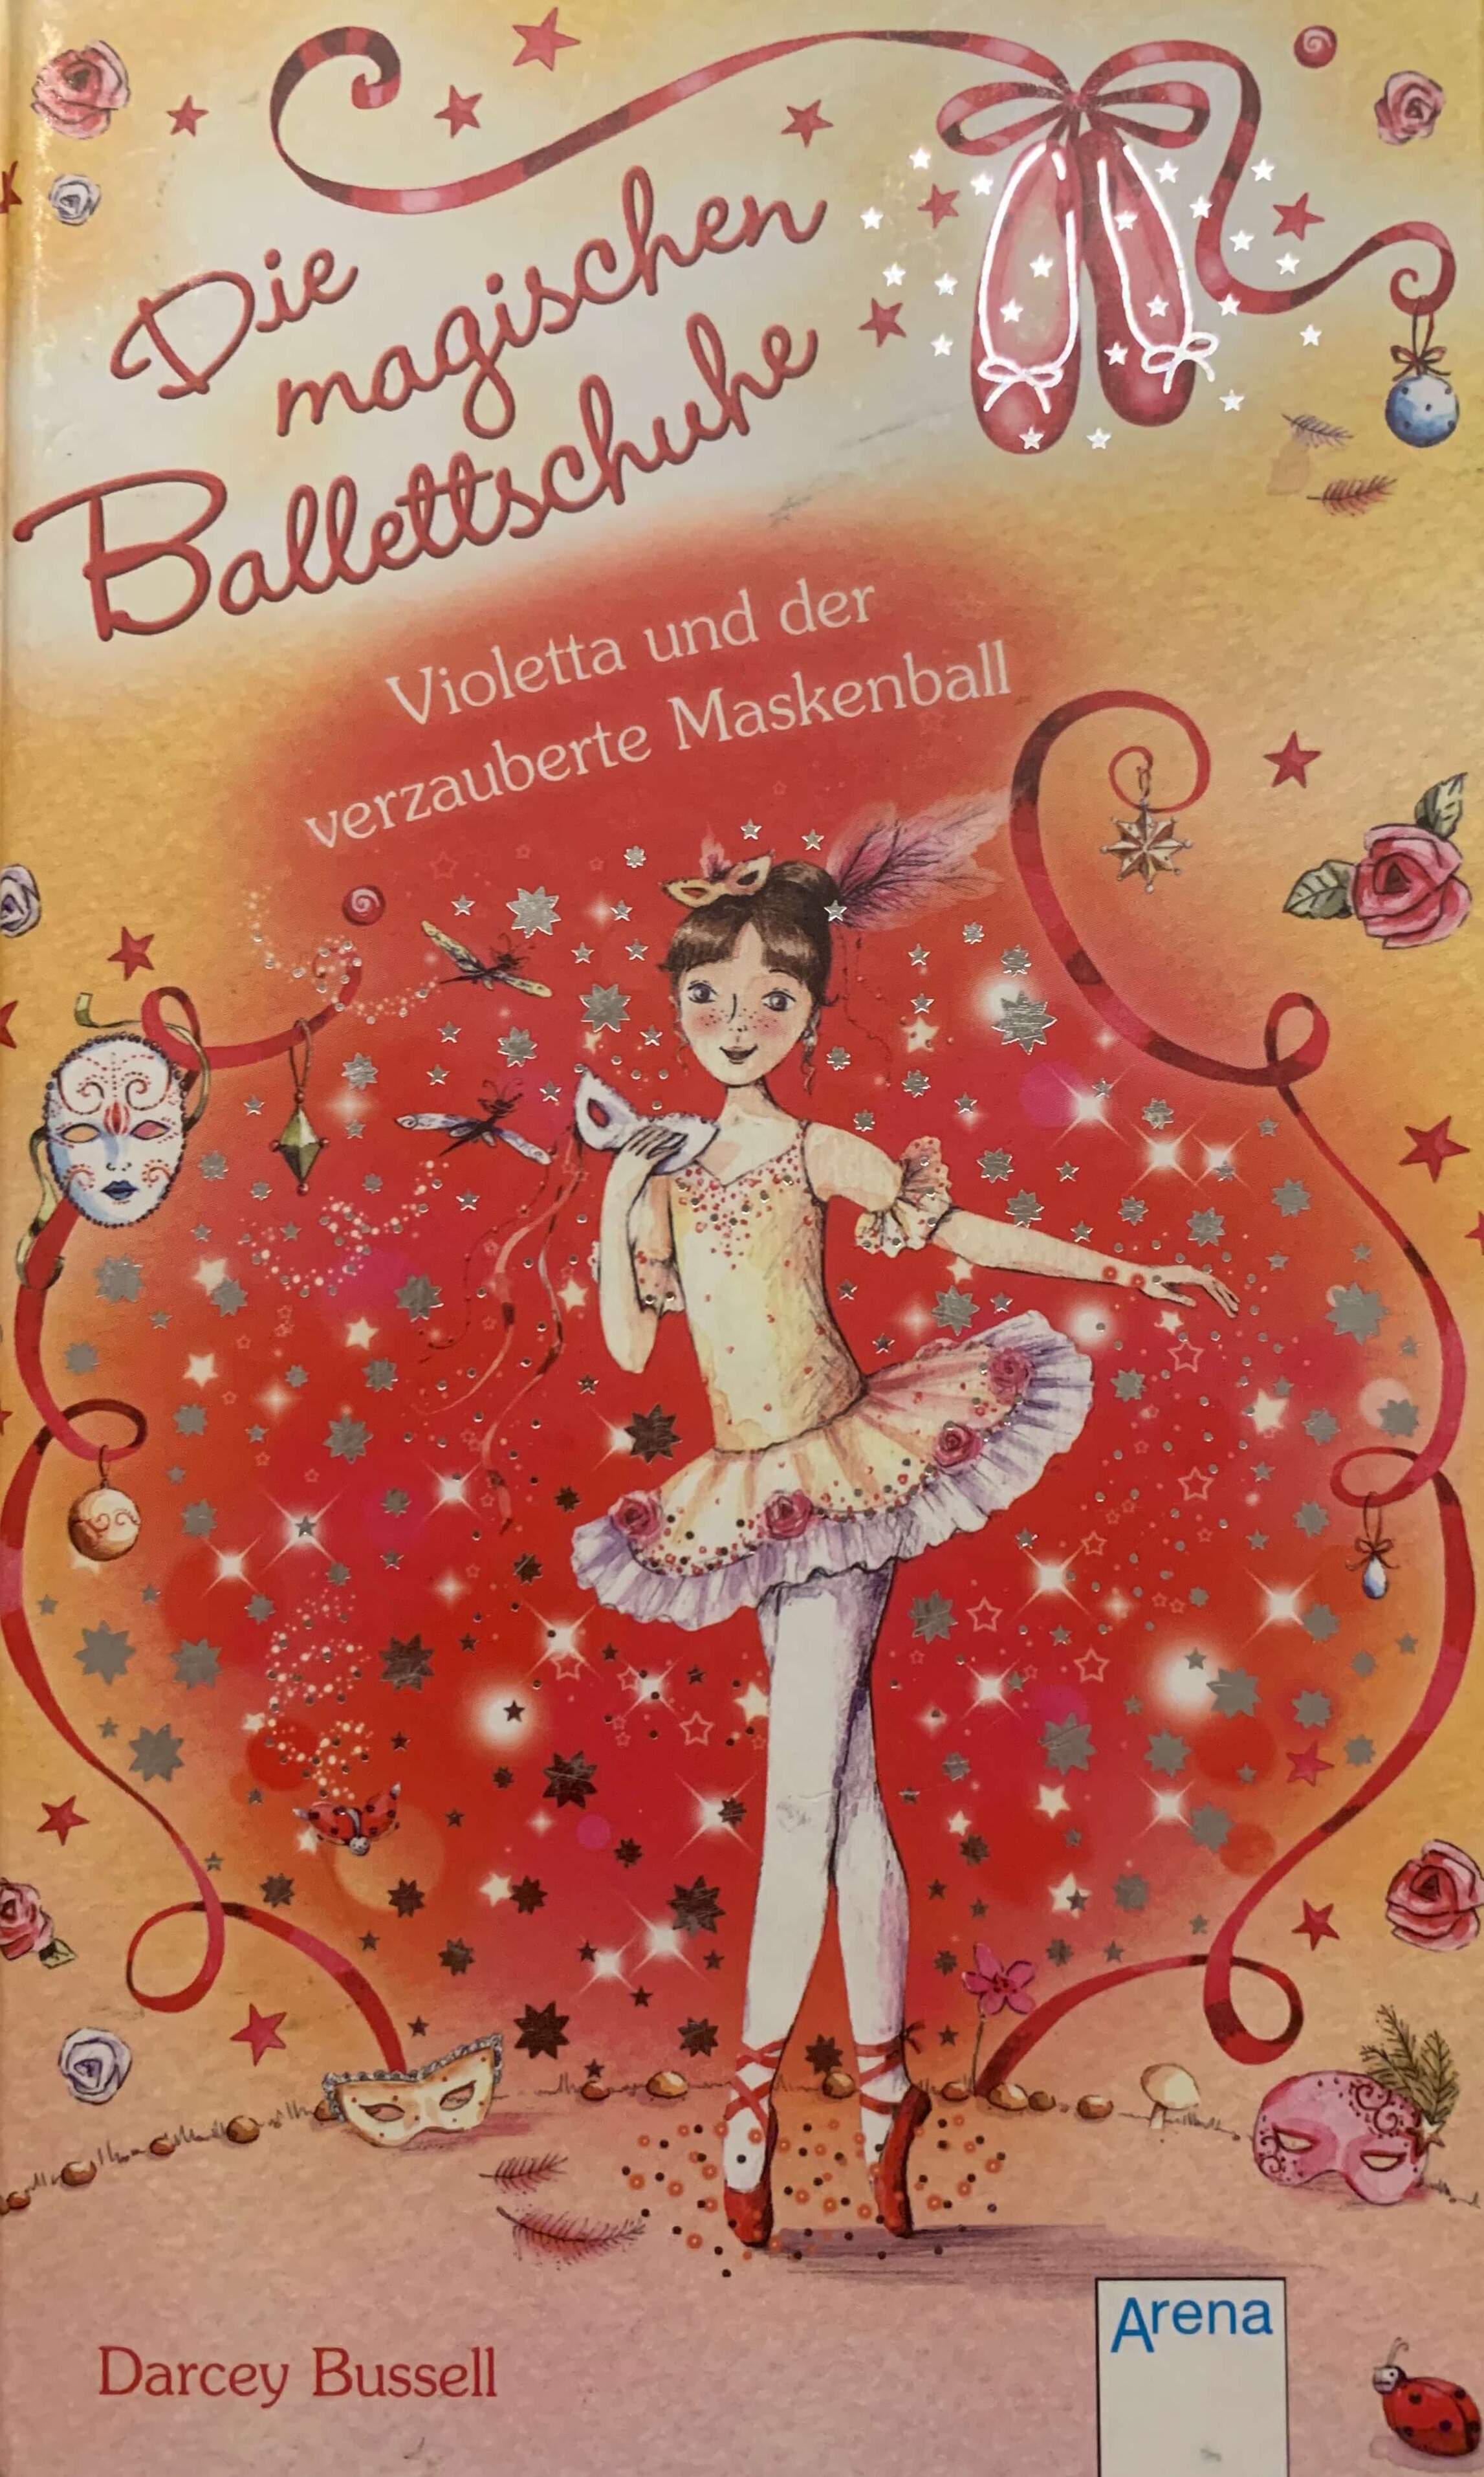 Die magischen Ballettschuhe - Violetta und der verzauberte Maskenball (Bd 3)